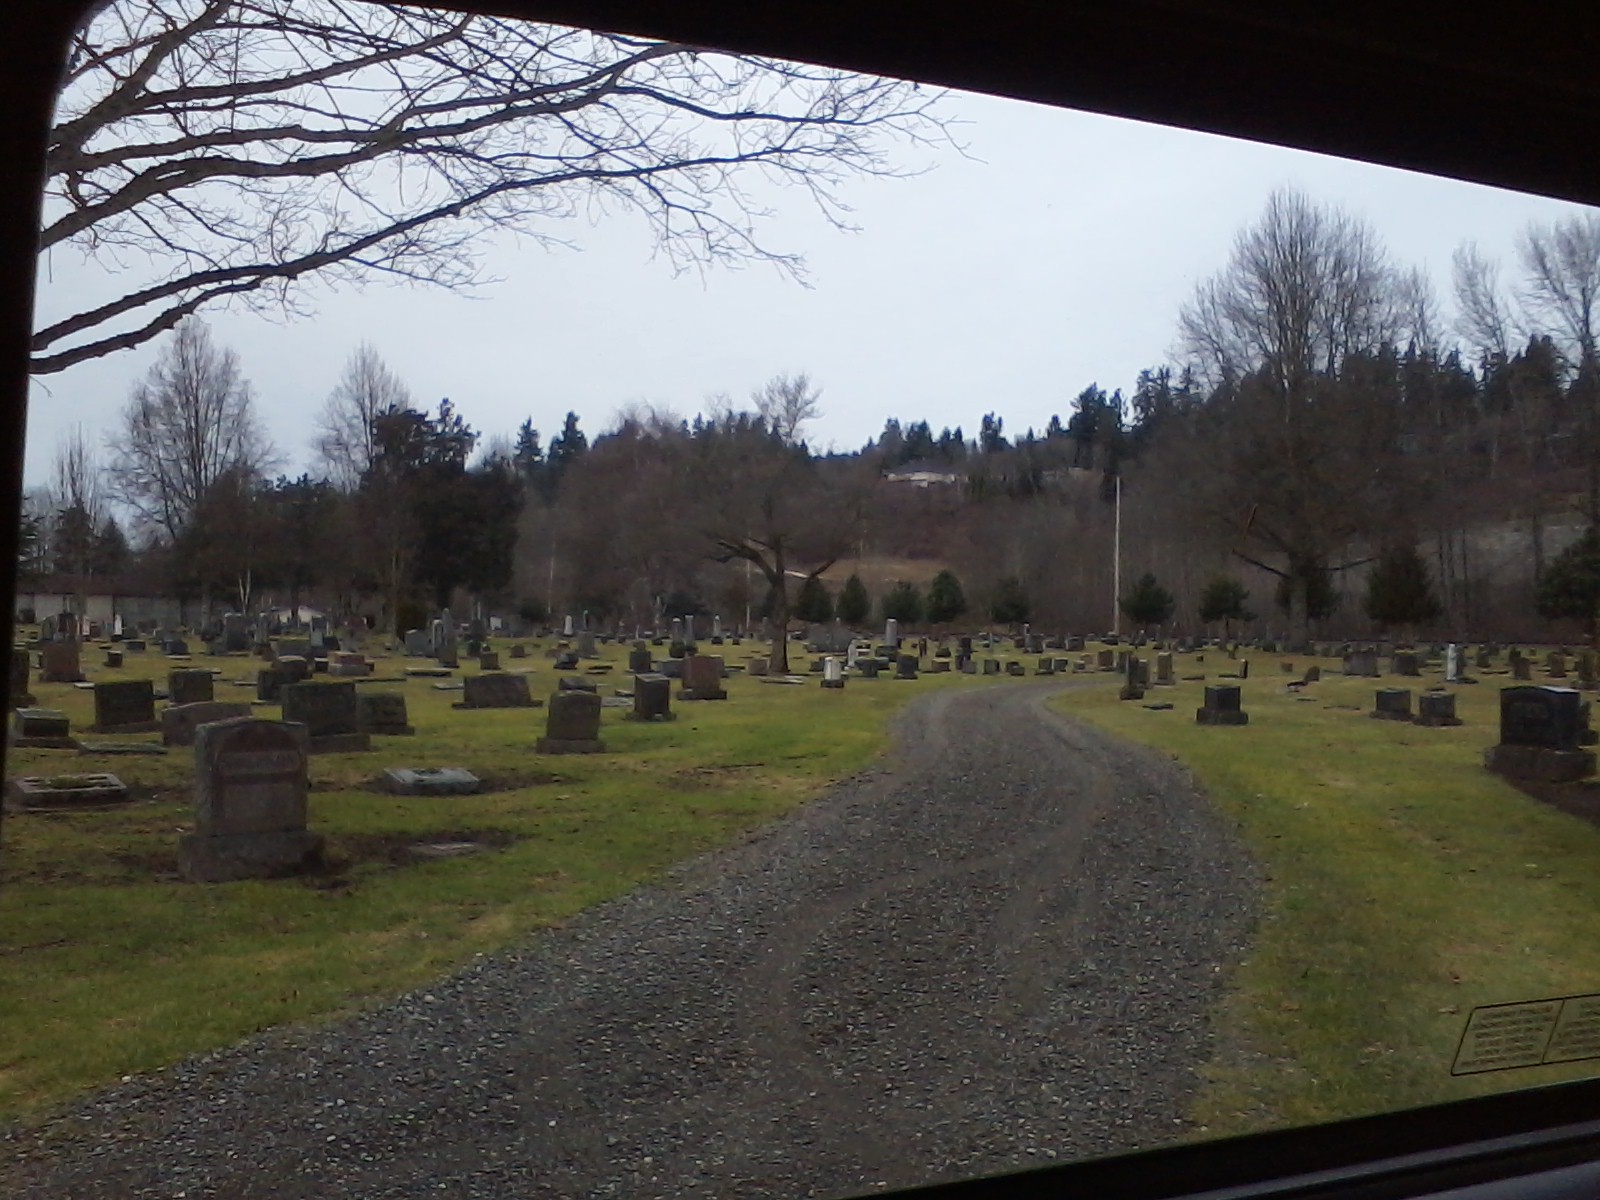 old pioneer cemetery in sumner wa